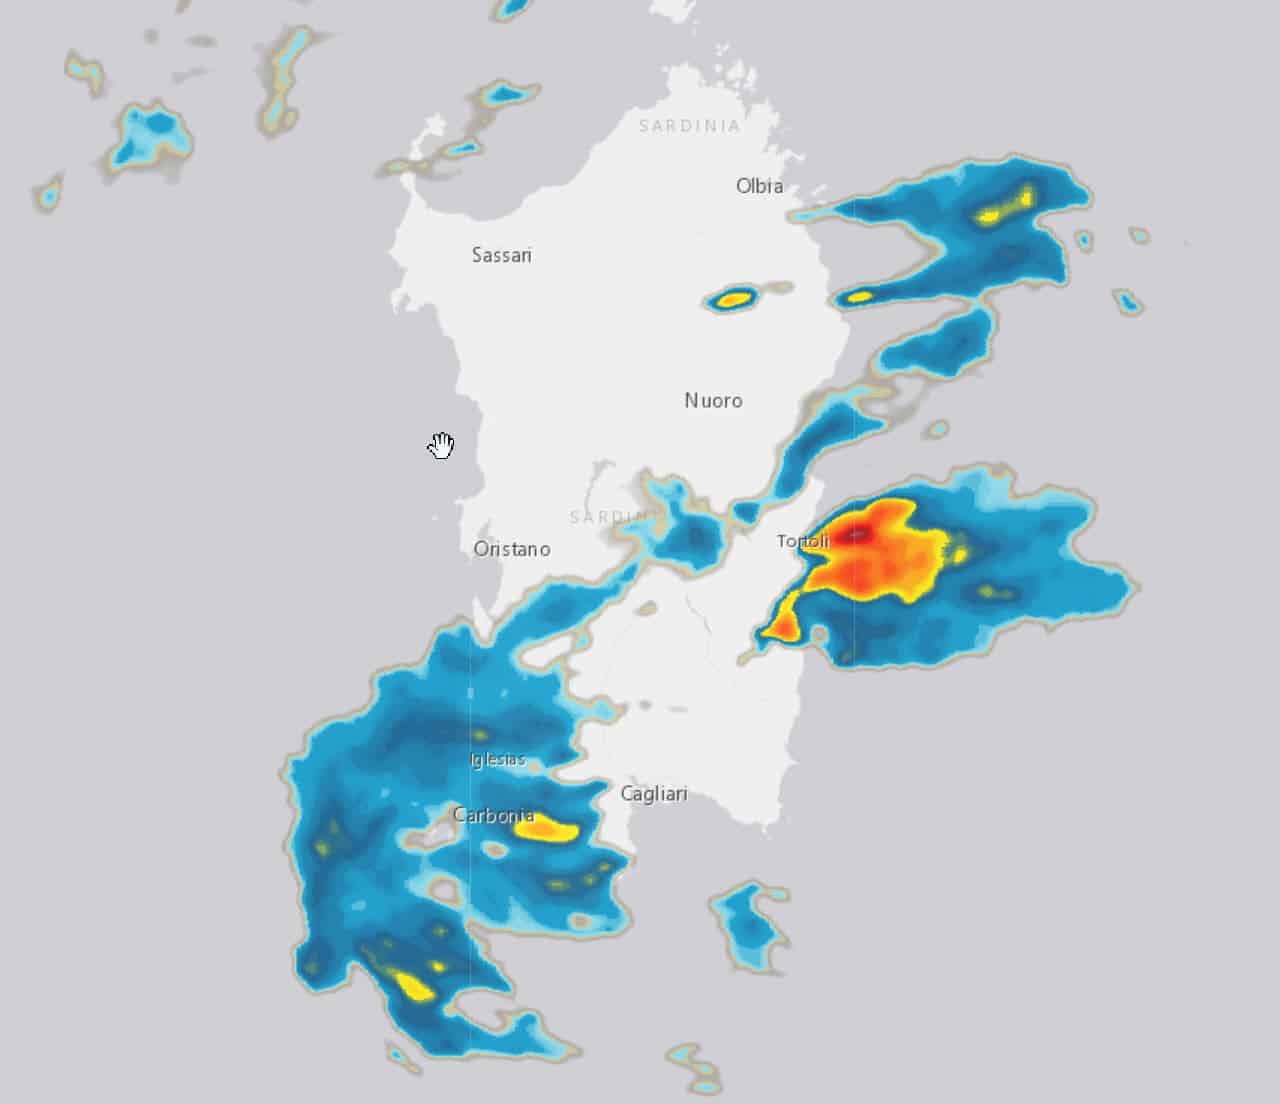 2021 08 25 18 06 48 - Aggiornamento, Meteo Sardegna: escalation di forti temporali attorno alla regione. Focus e previsioni